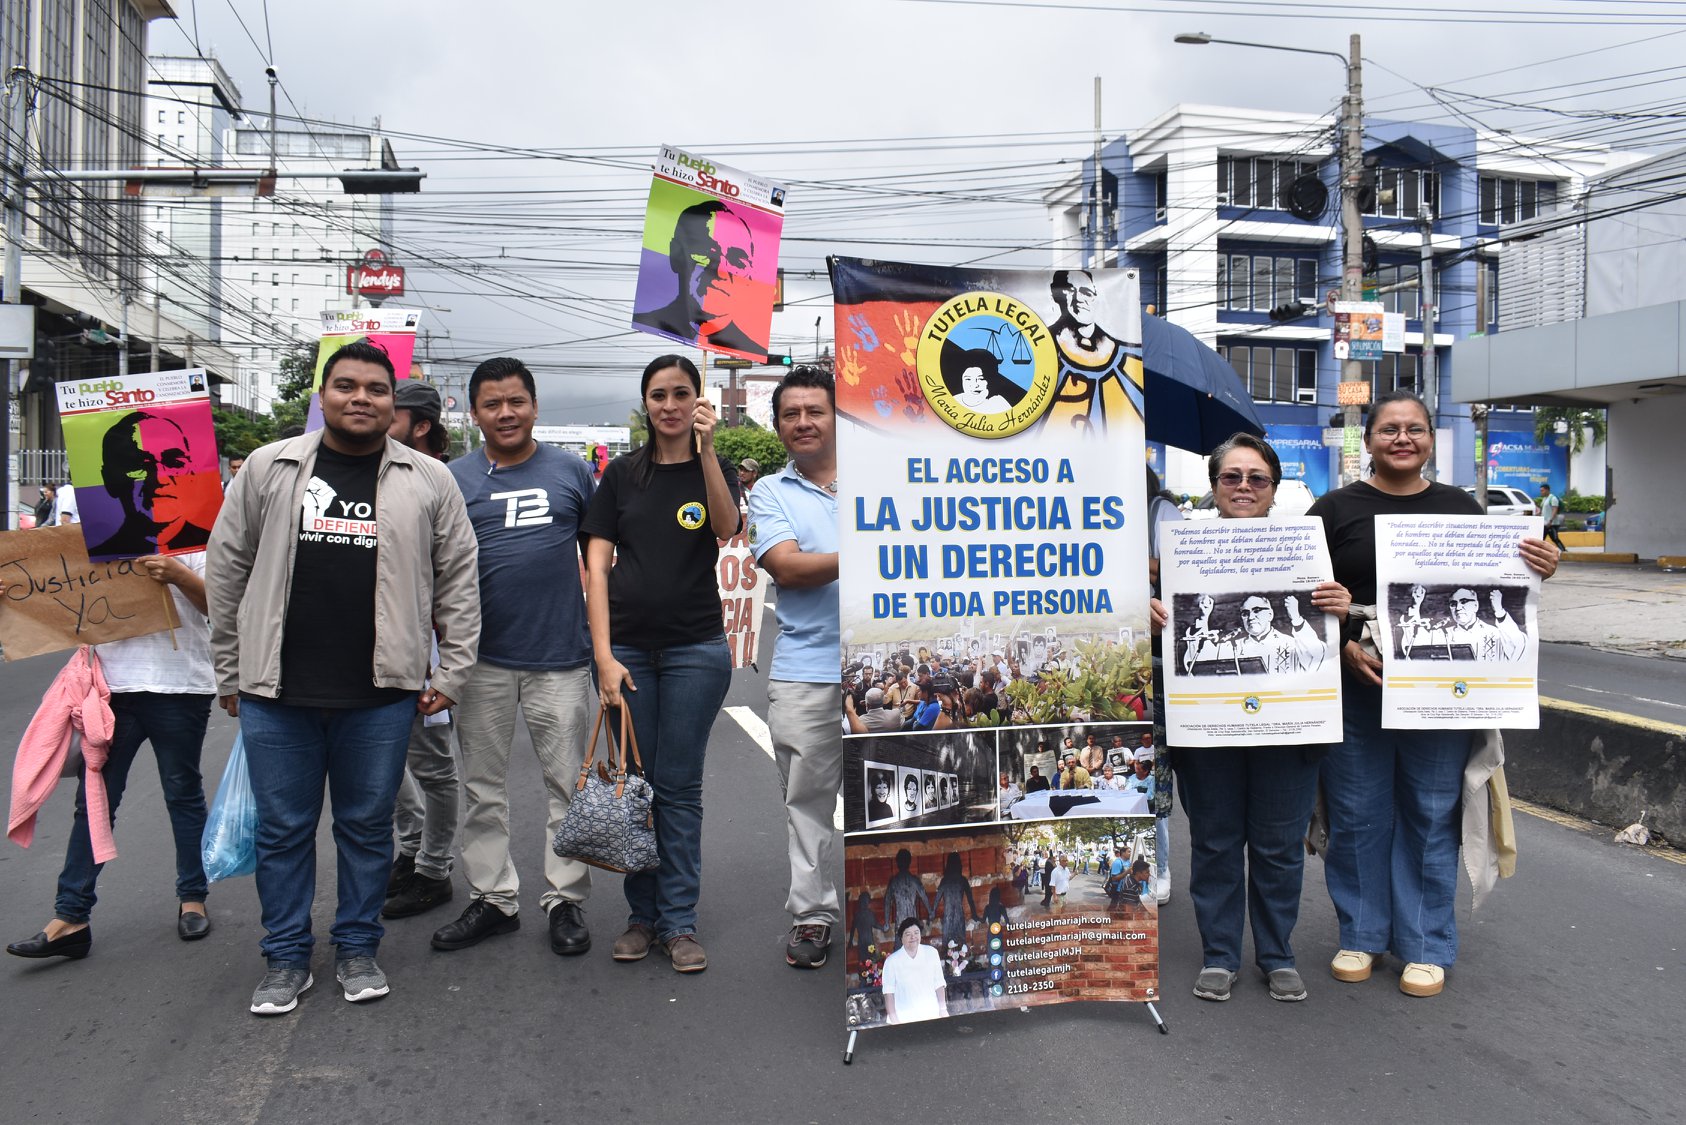 Grupper unserer Partner*innen von Tutela Lega, die am 10. Oktober 2018 für Gerechtigkeit im Fall des MOrds an Oscar Romero demonstrieren.